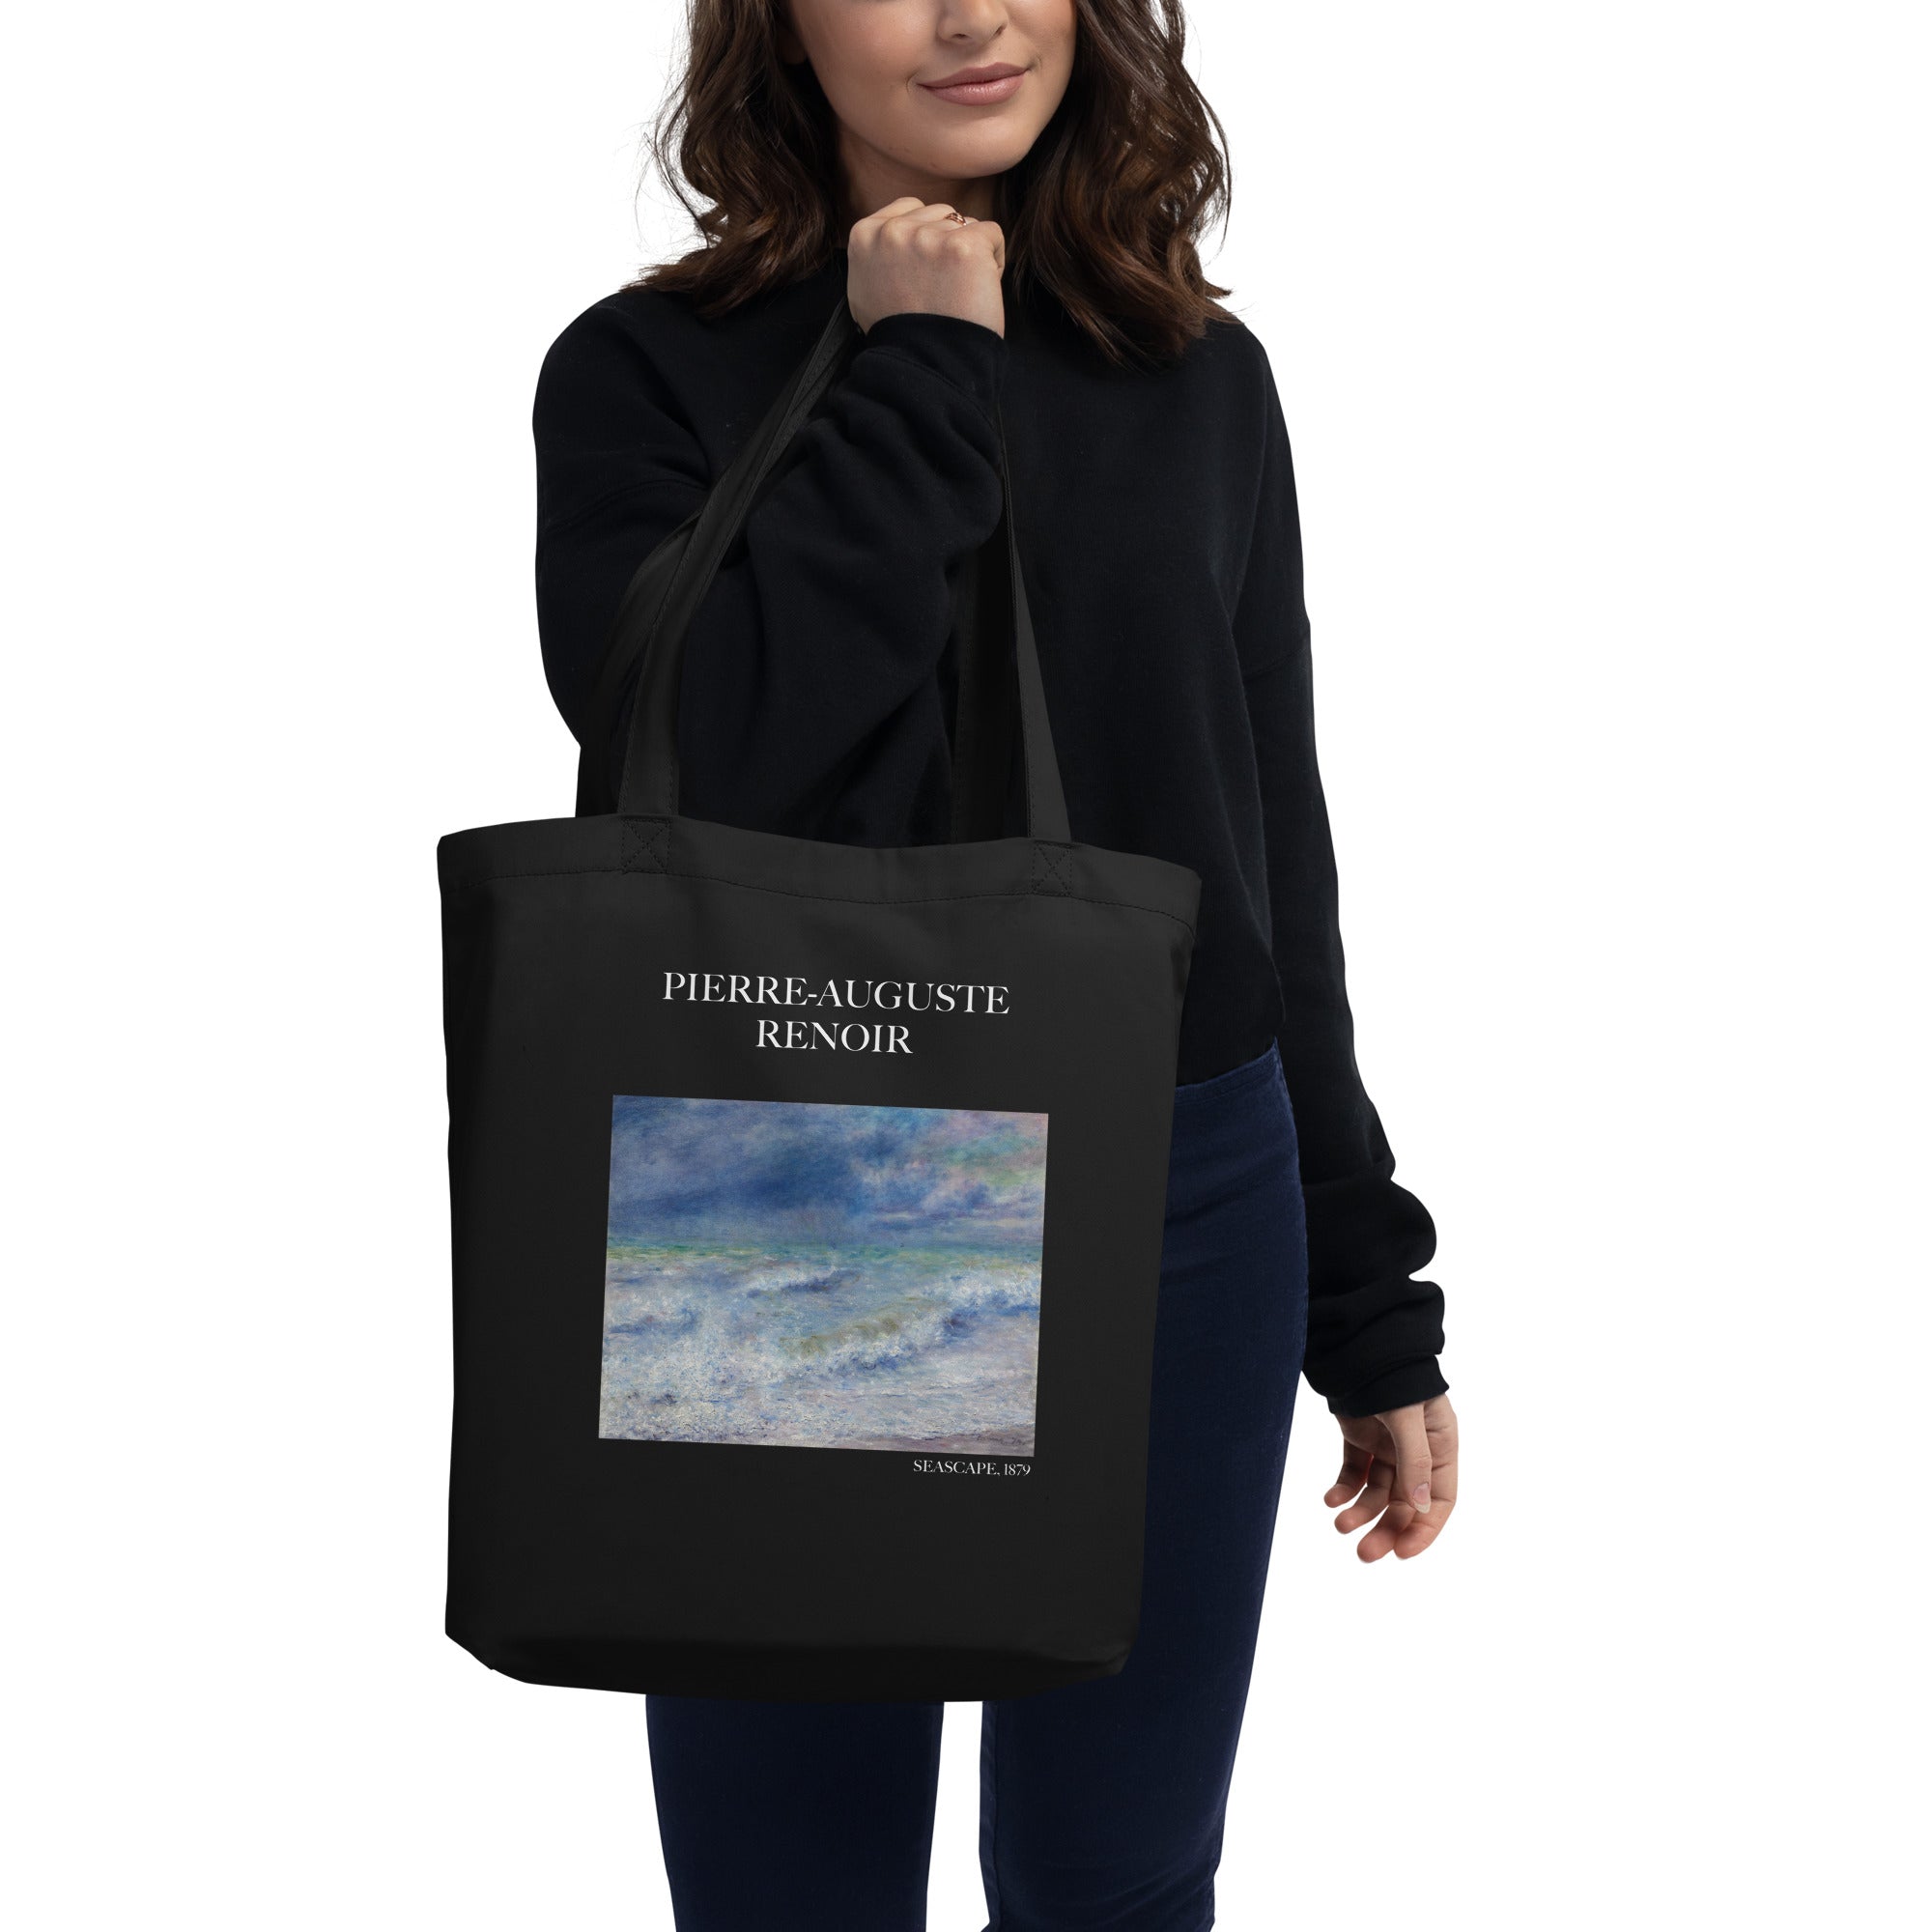 Pierre-Auguste Renoir - Einkaufstasche mit berühmtem Gemälde „Meereslandschaft“ - Umweltfreundliche Kunst-Einkaufstasche